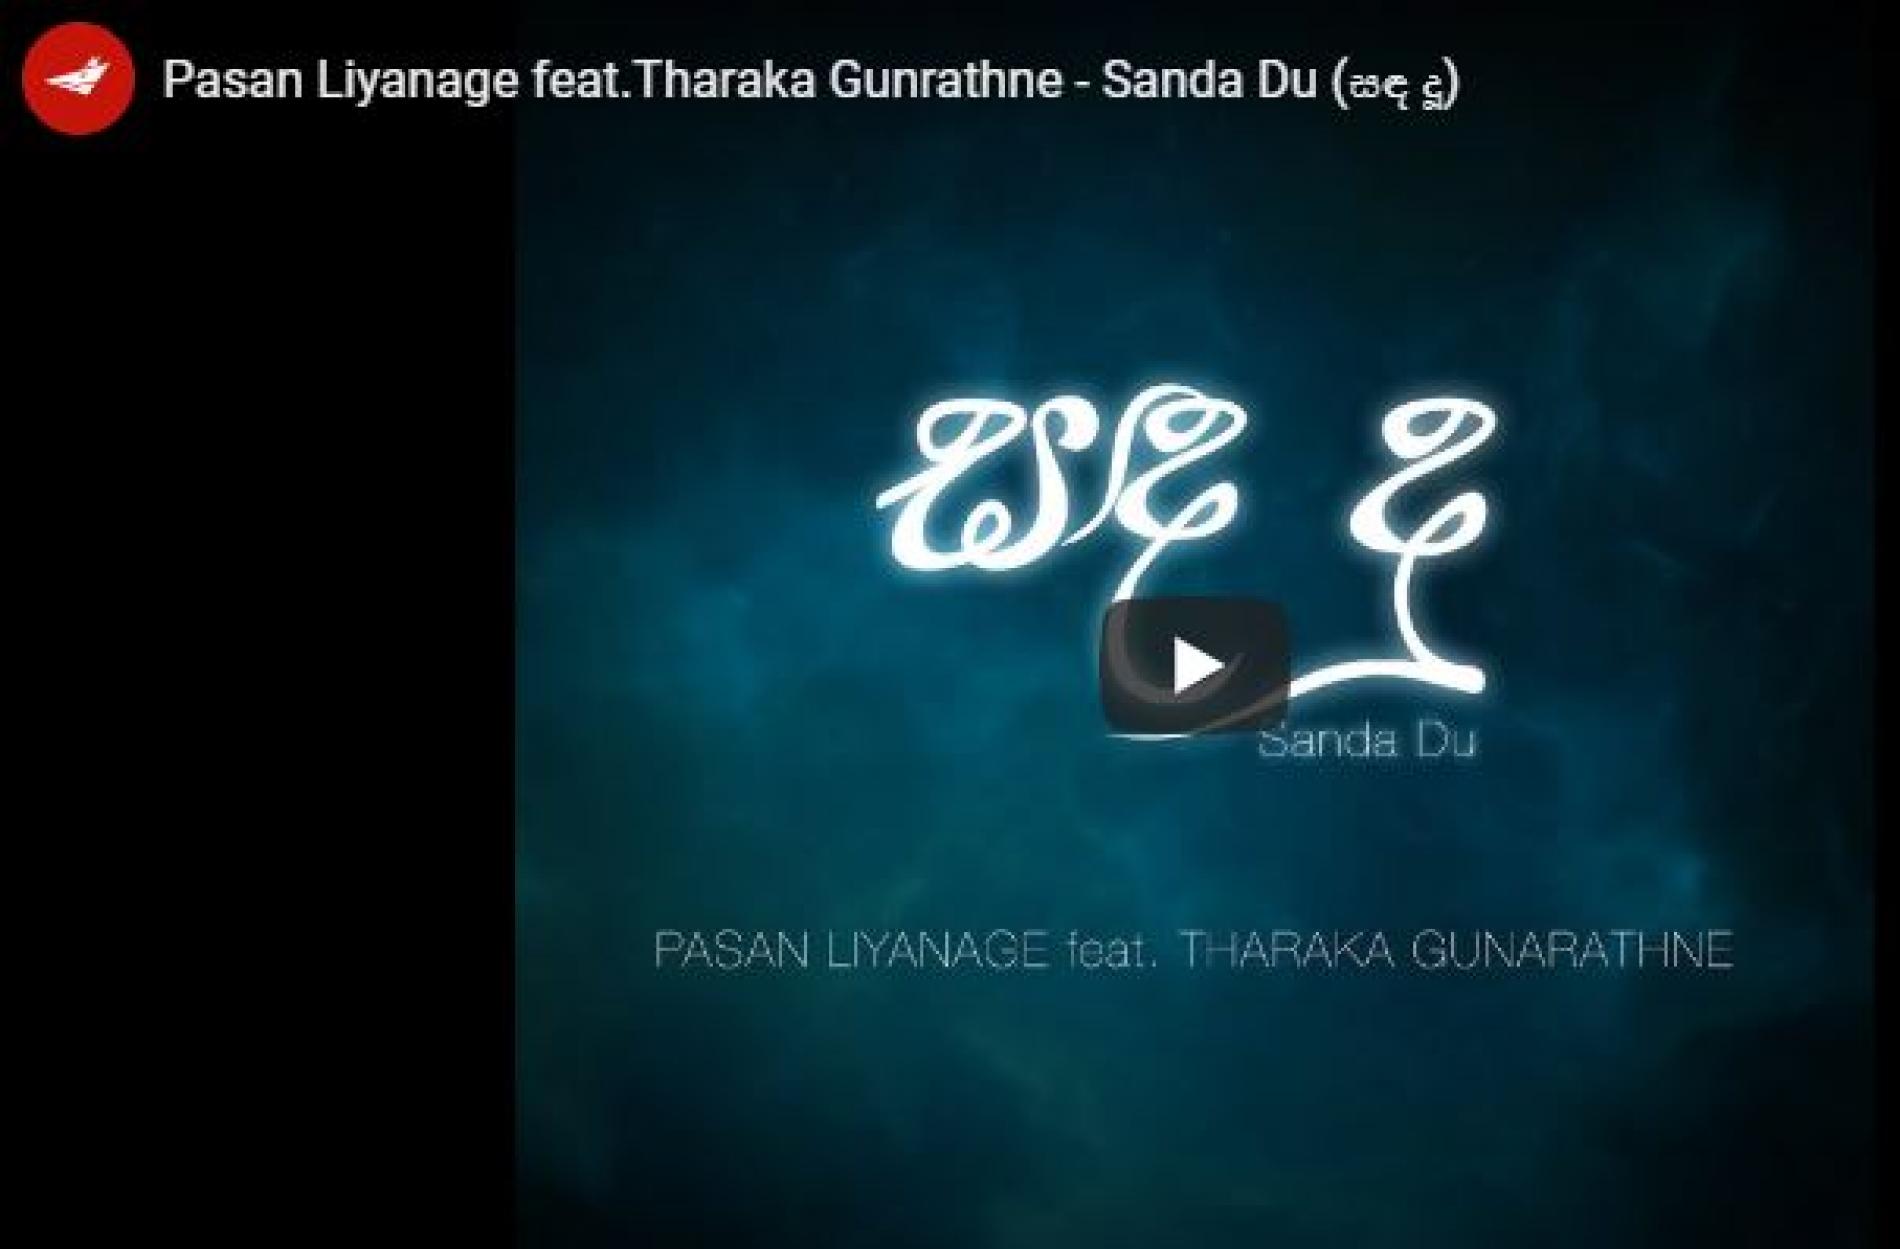 Pasan Liyanage feat Tharaka Gunrathne – Sanda Du (සඳ දූ)